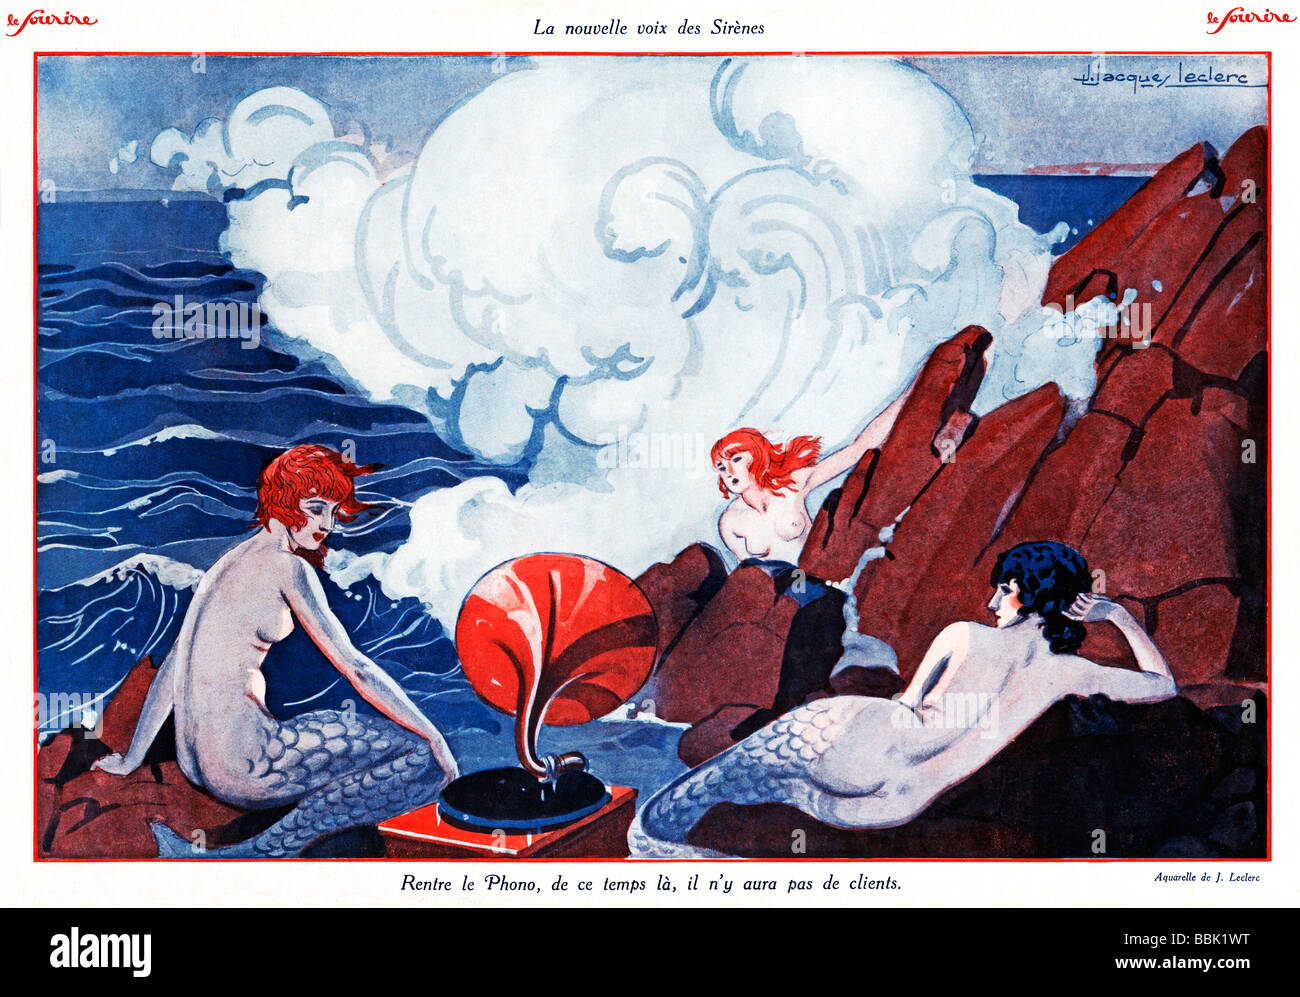 La Nouvelle Voix des Sirenes 1920s illustration of mermaid life Rentre le Phono de ce temps la il ny aura pas de clients Stock Photo